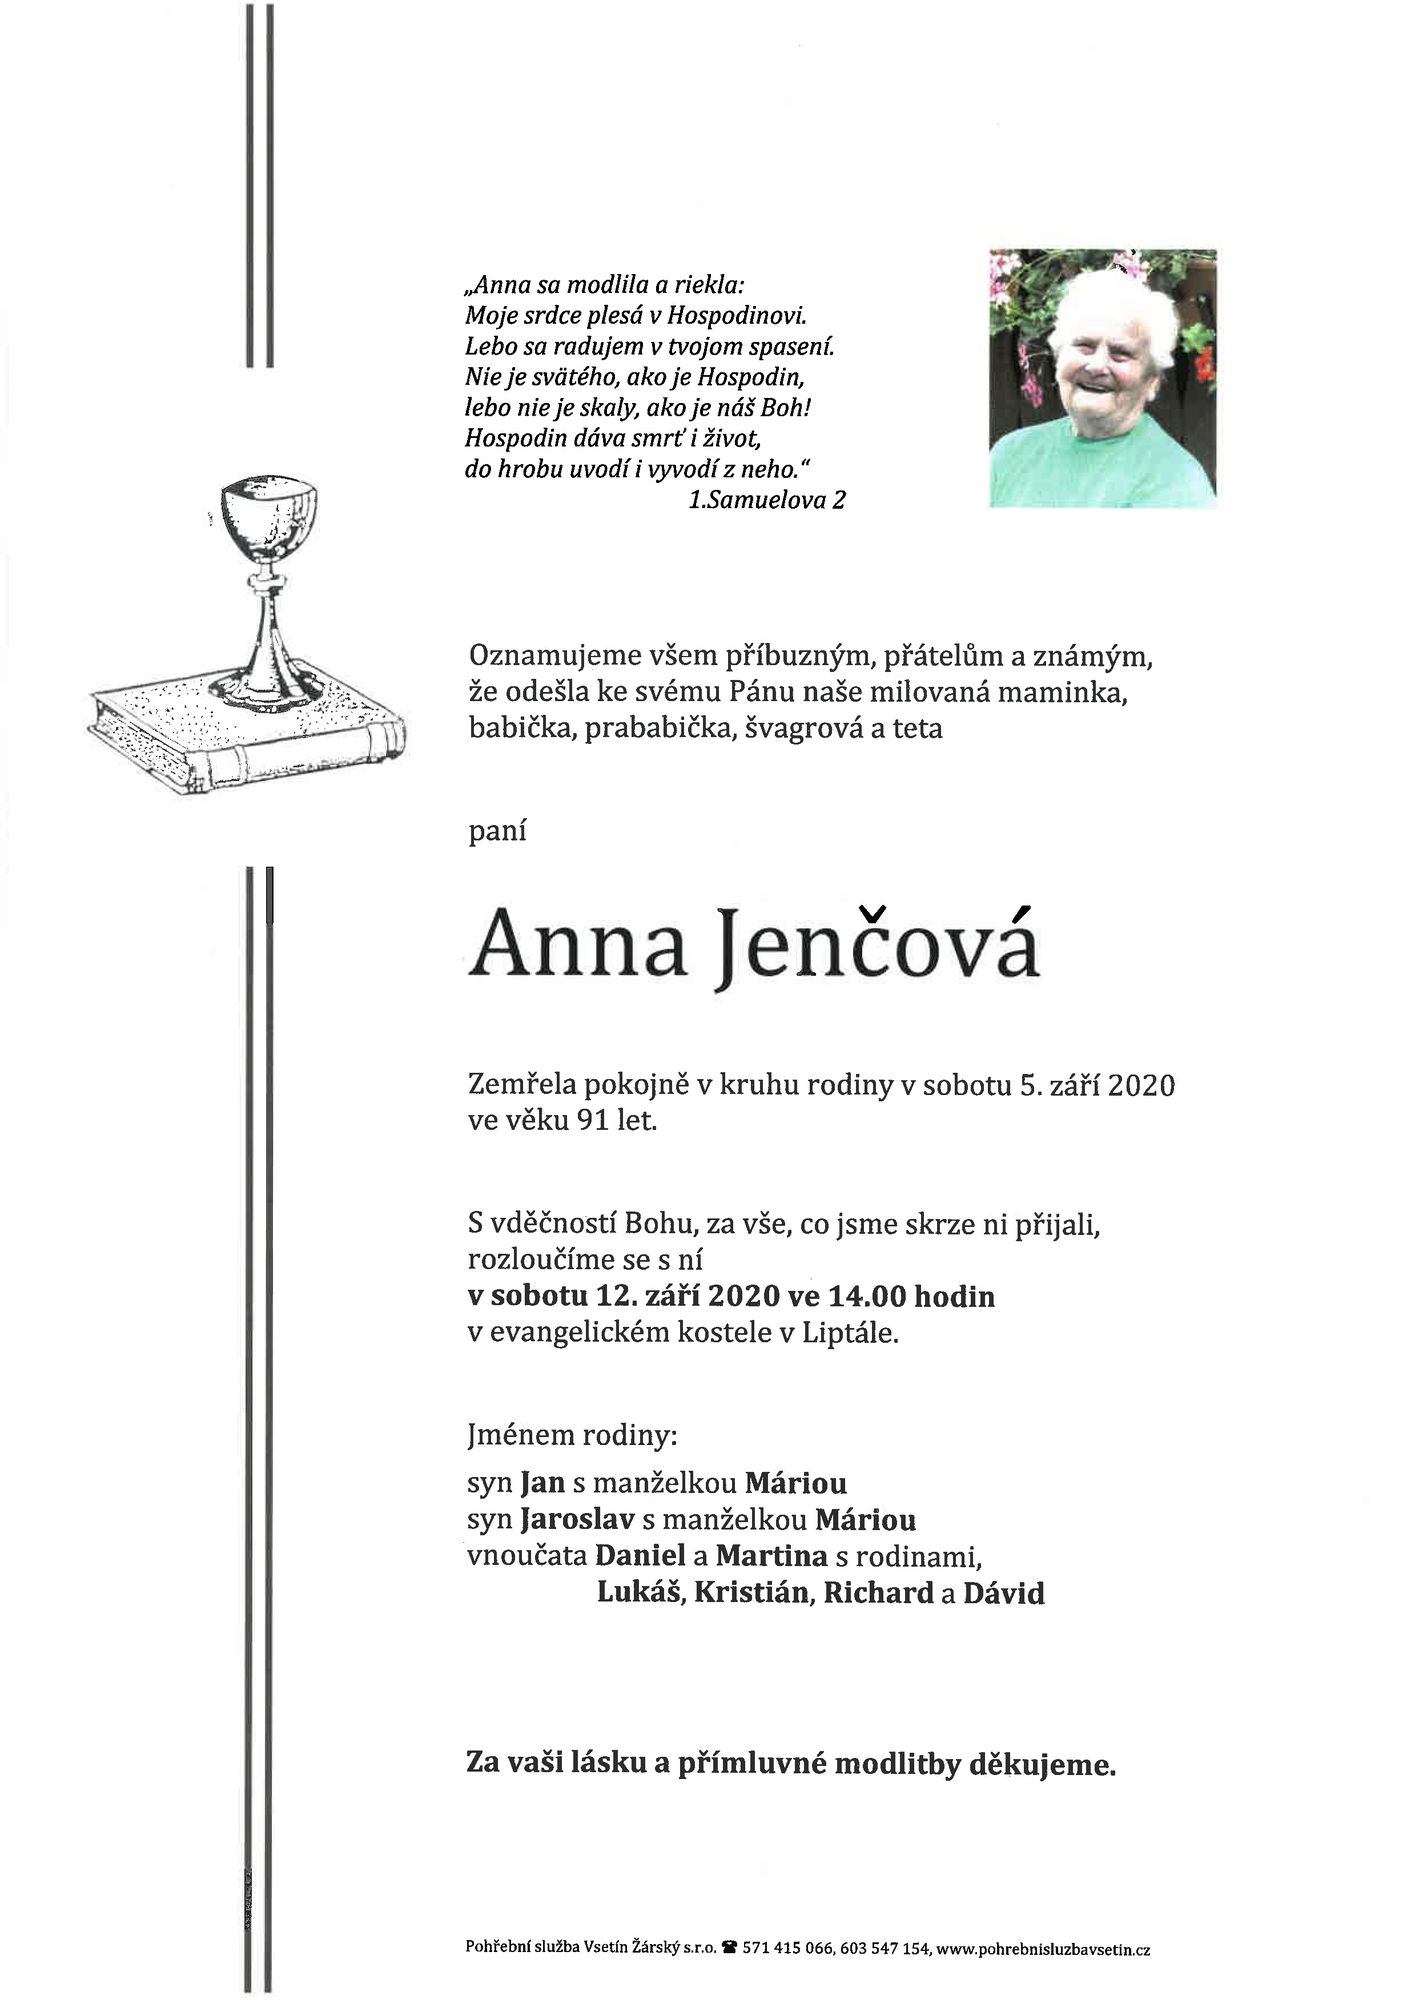 Anna Jenčová